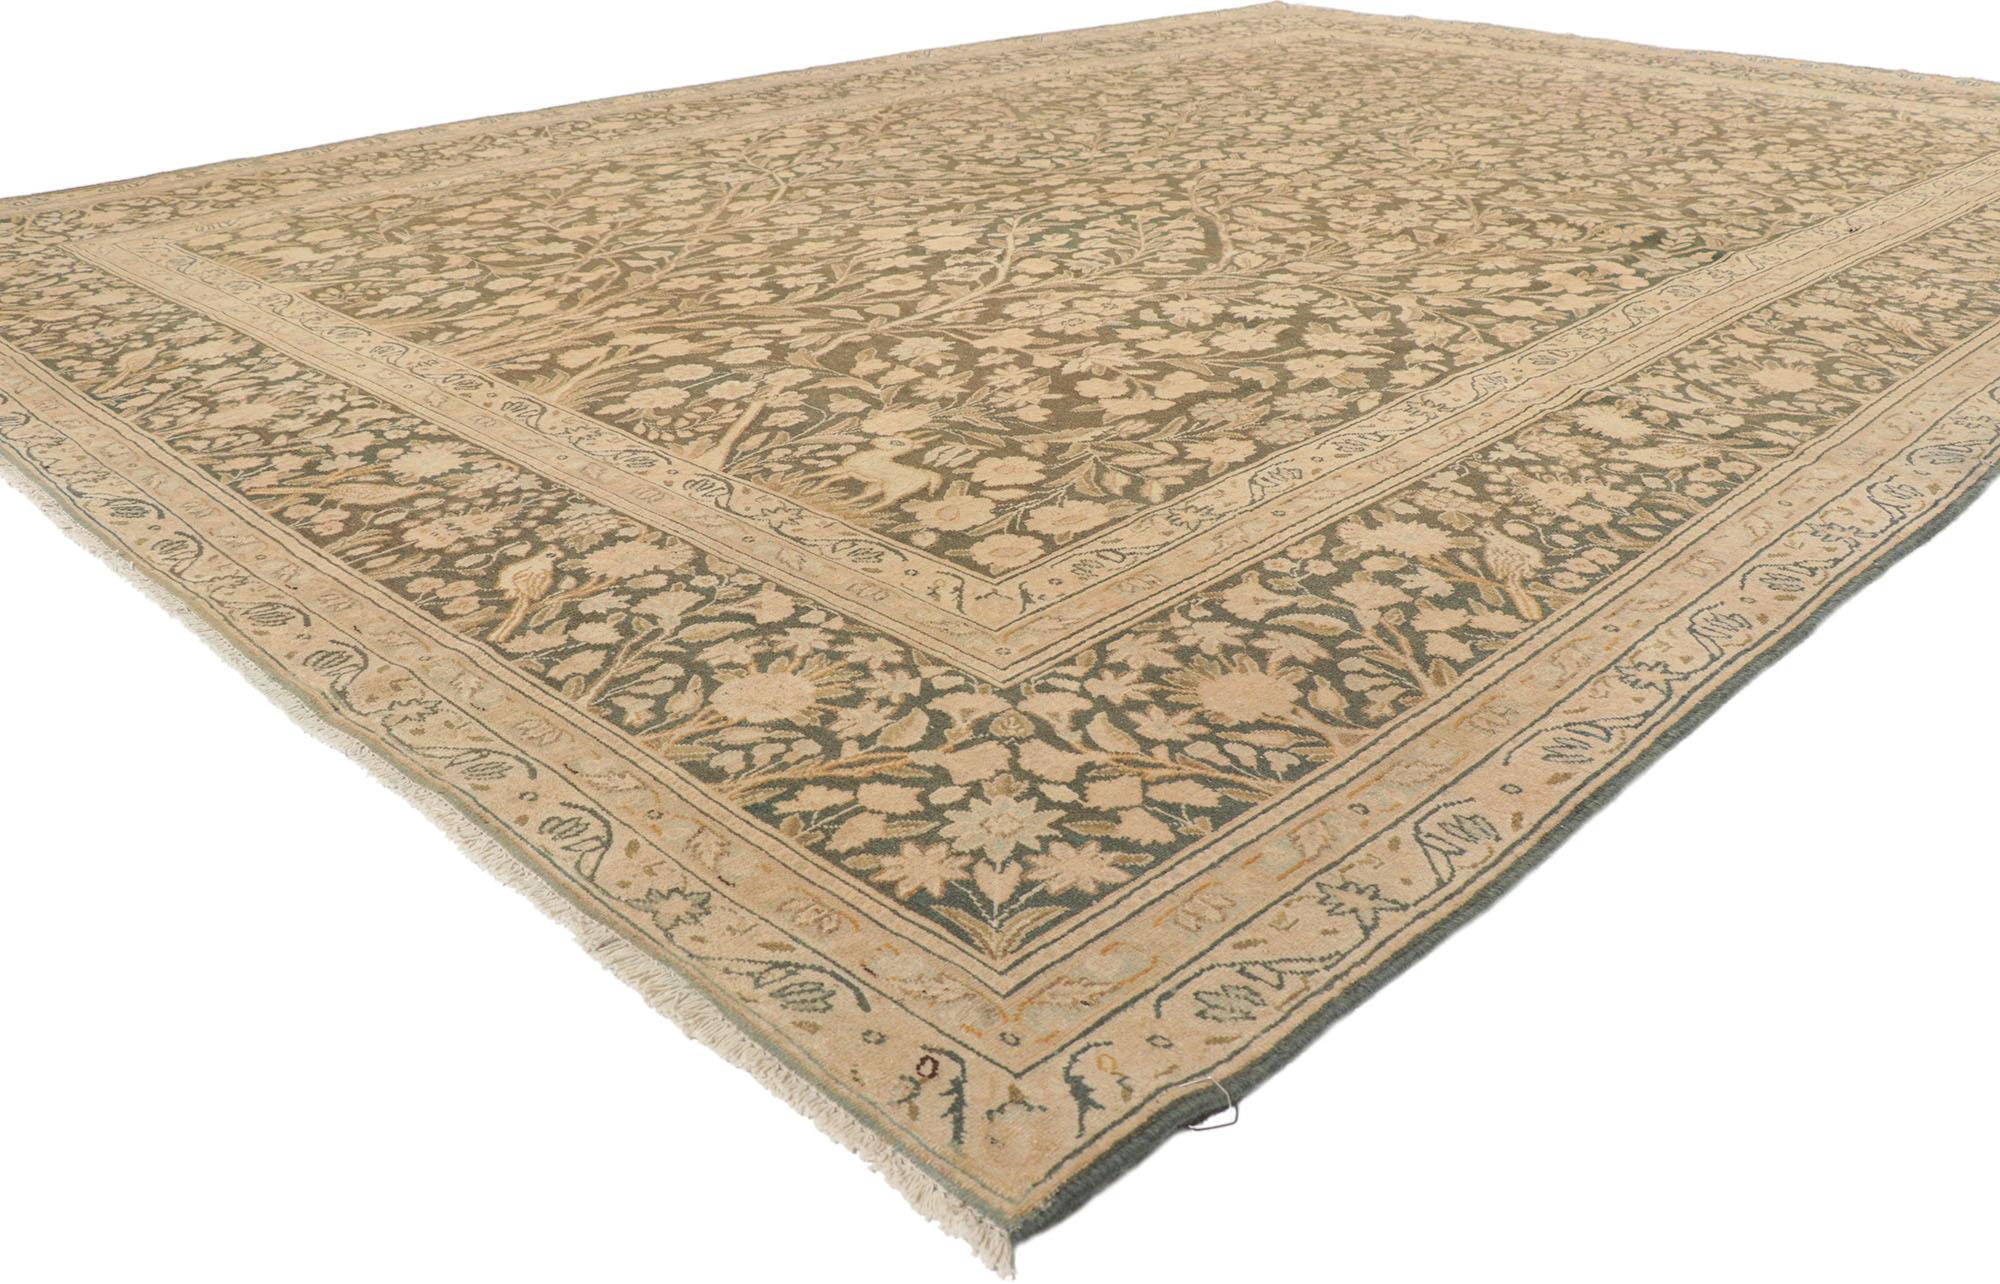 53731 Vintage Persian Tabriz Rug, 08'10 x 12'08.
Biophiles Design trifft bei diesem persischen Vintage-Tabriz-Teppich auf Jugendstil. Das dekorative Gartendesign und die erdigen Farbtöne, die in dieses Stück eingewebt sind, sorgen für ein elegantes